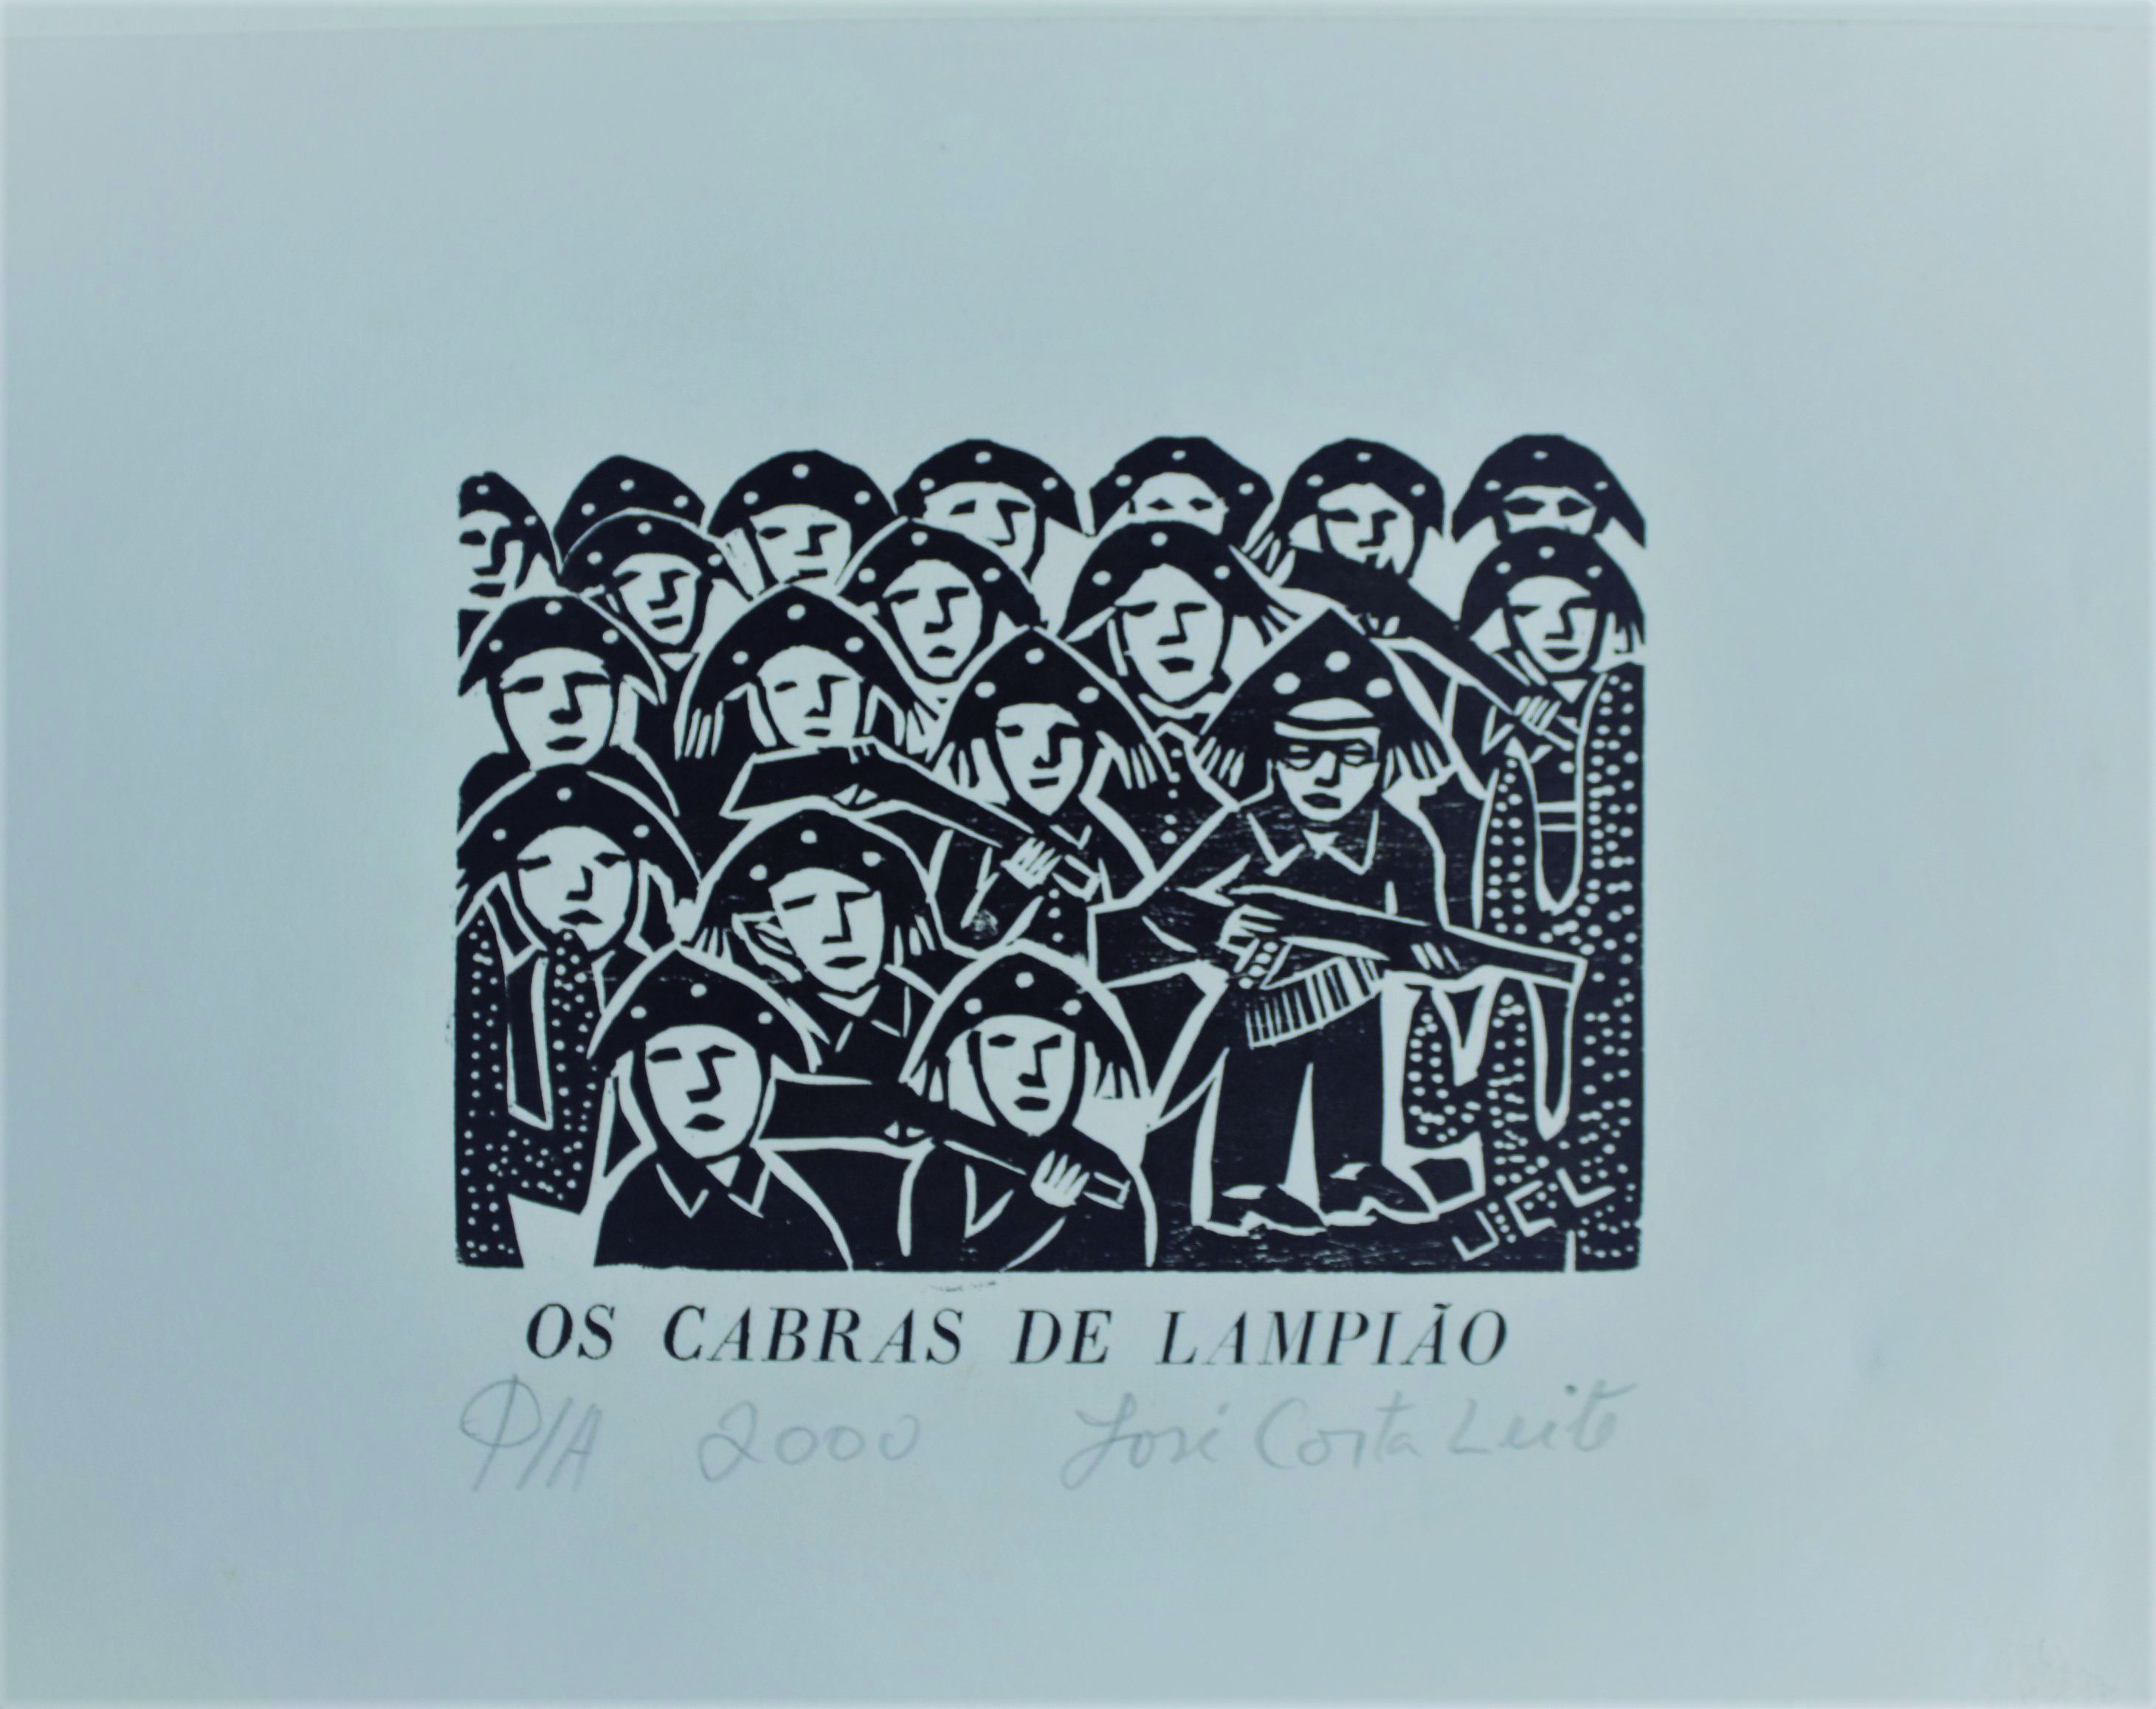 Os cabras de Lampião, 2000.